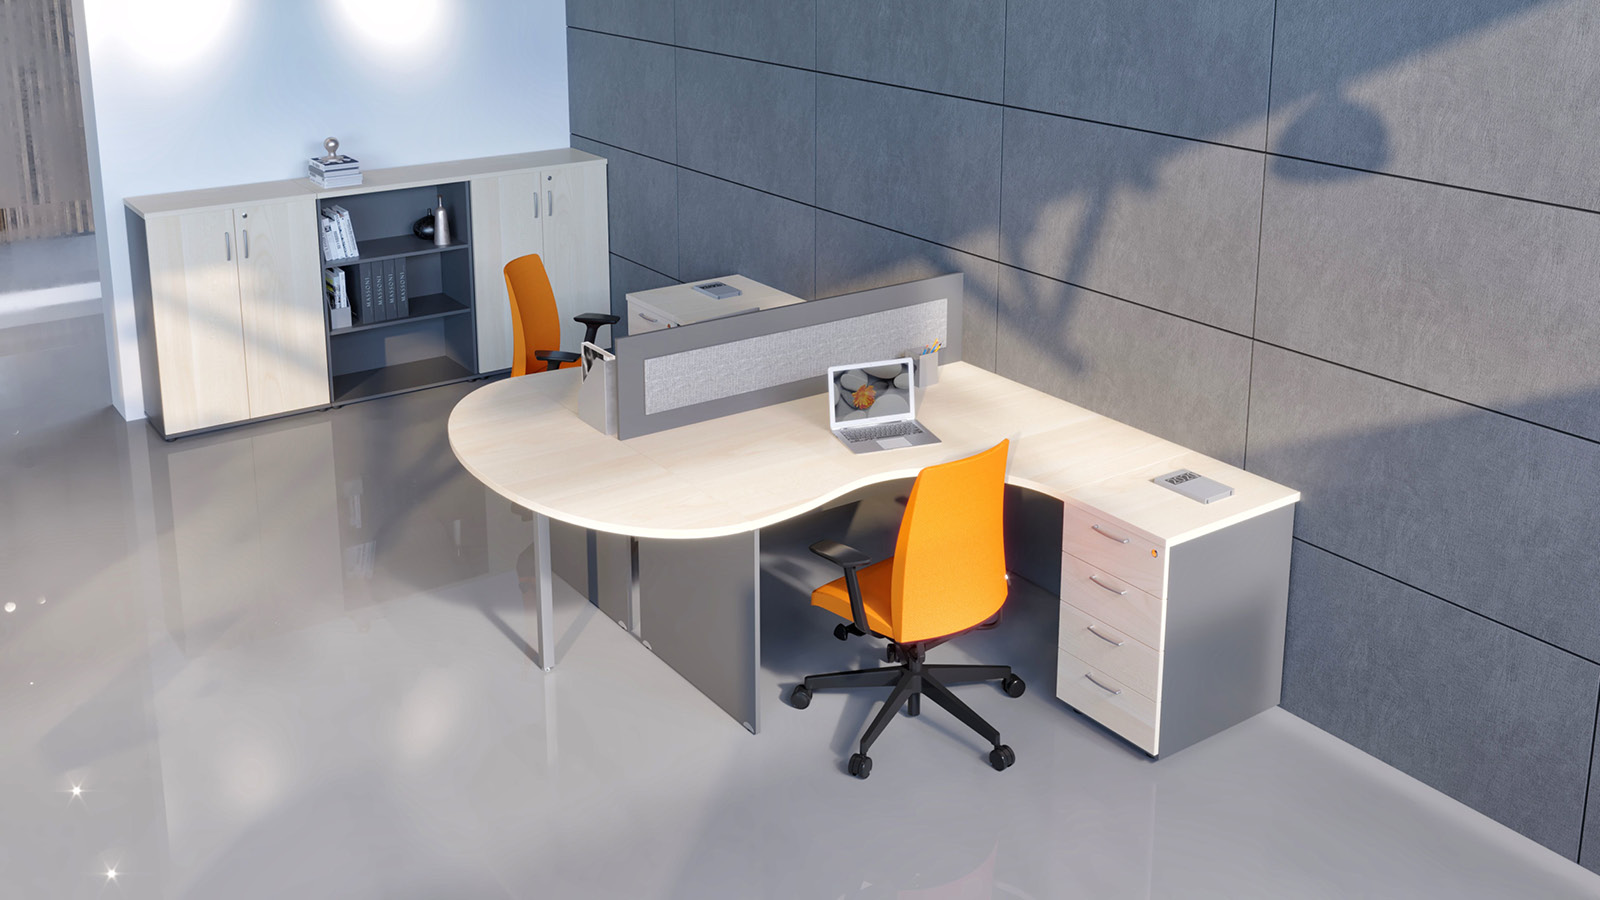 Biuro wyposażone w narożne biurka (kolor: klon/popiel) z przystawką i kontenerkami. Całość uzupełniona o szafy i krzesła.